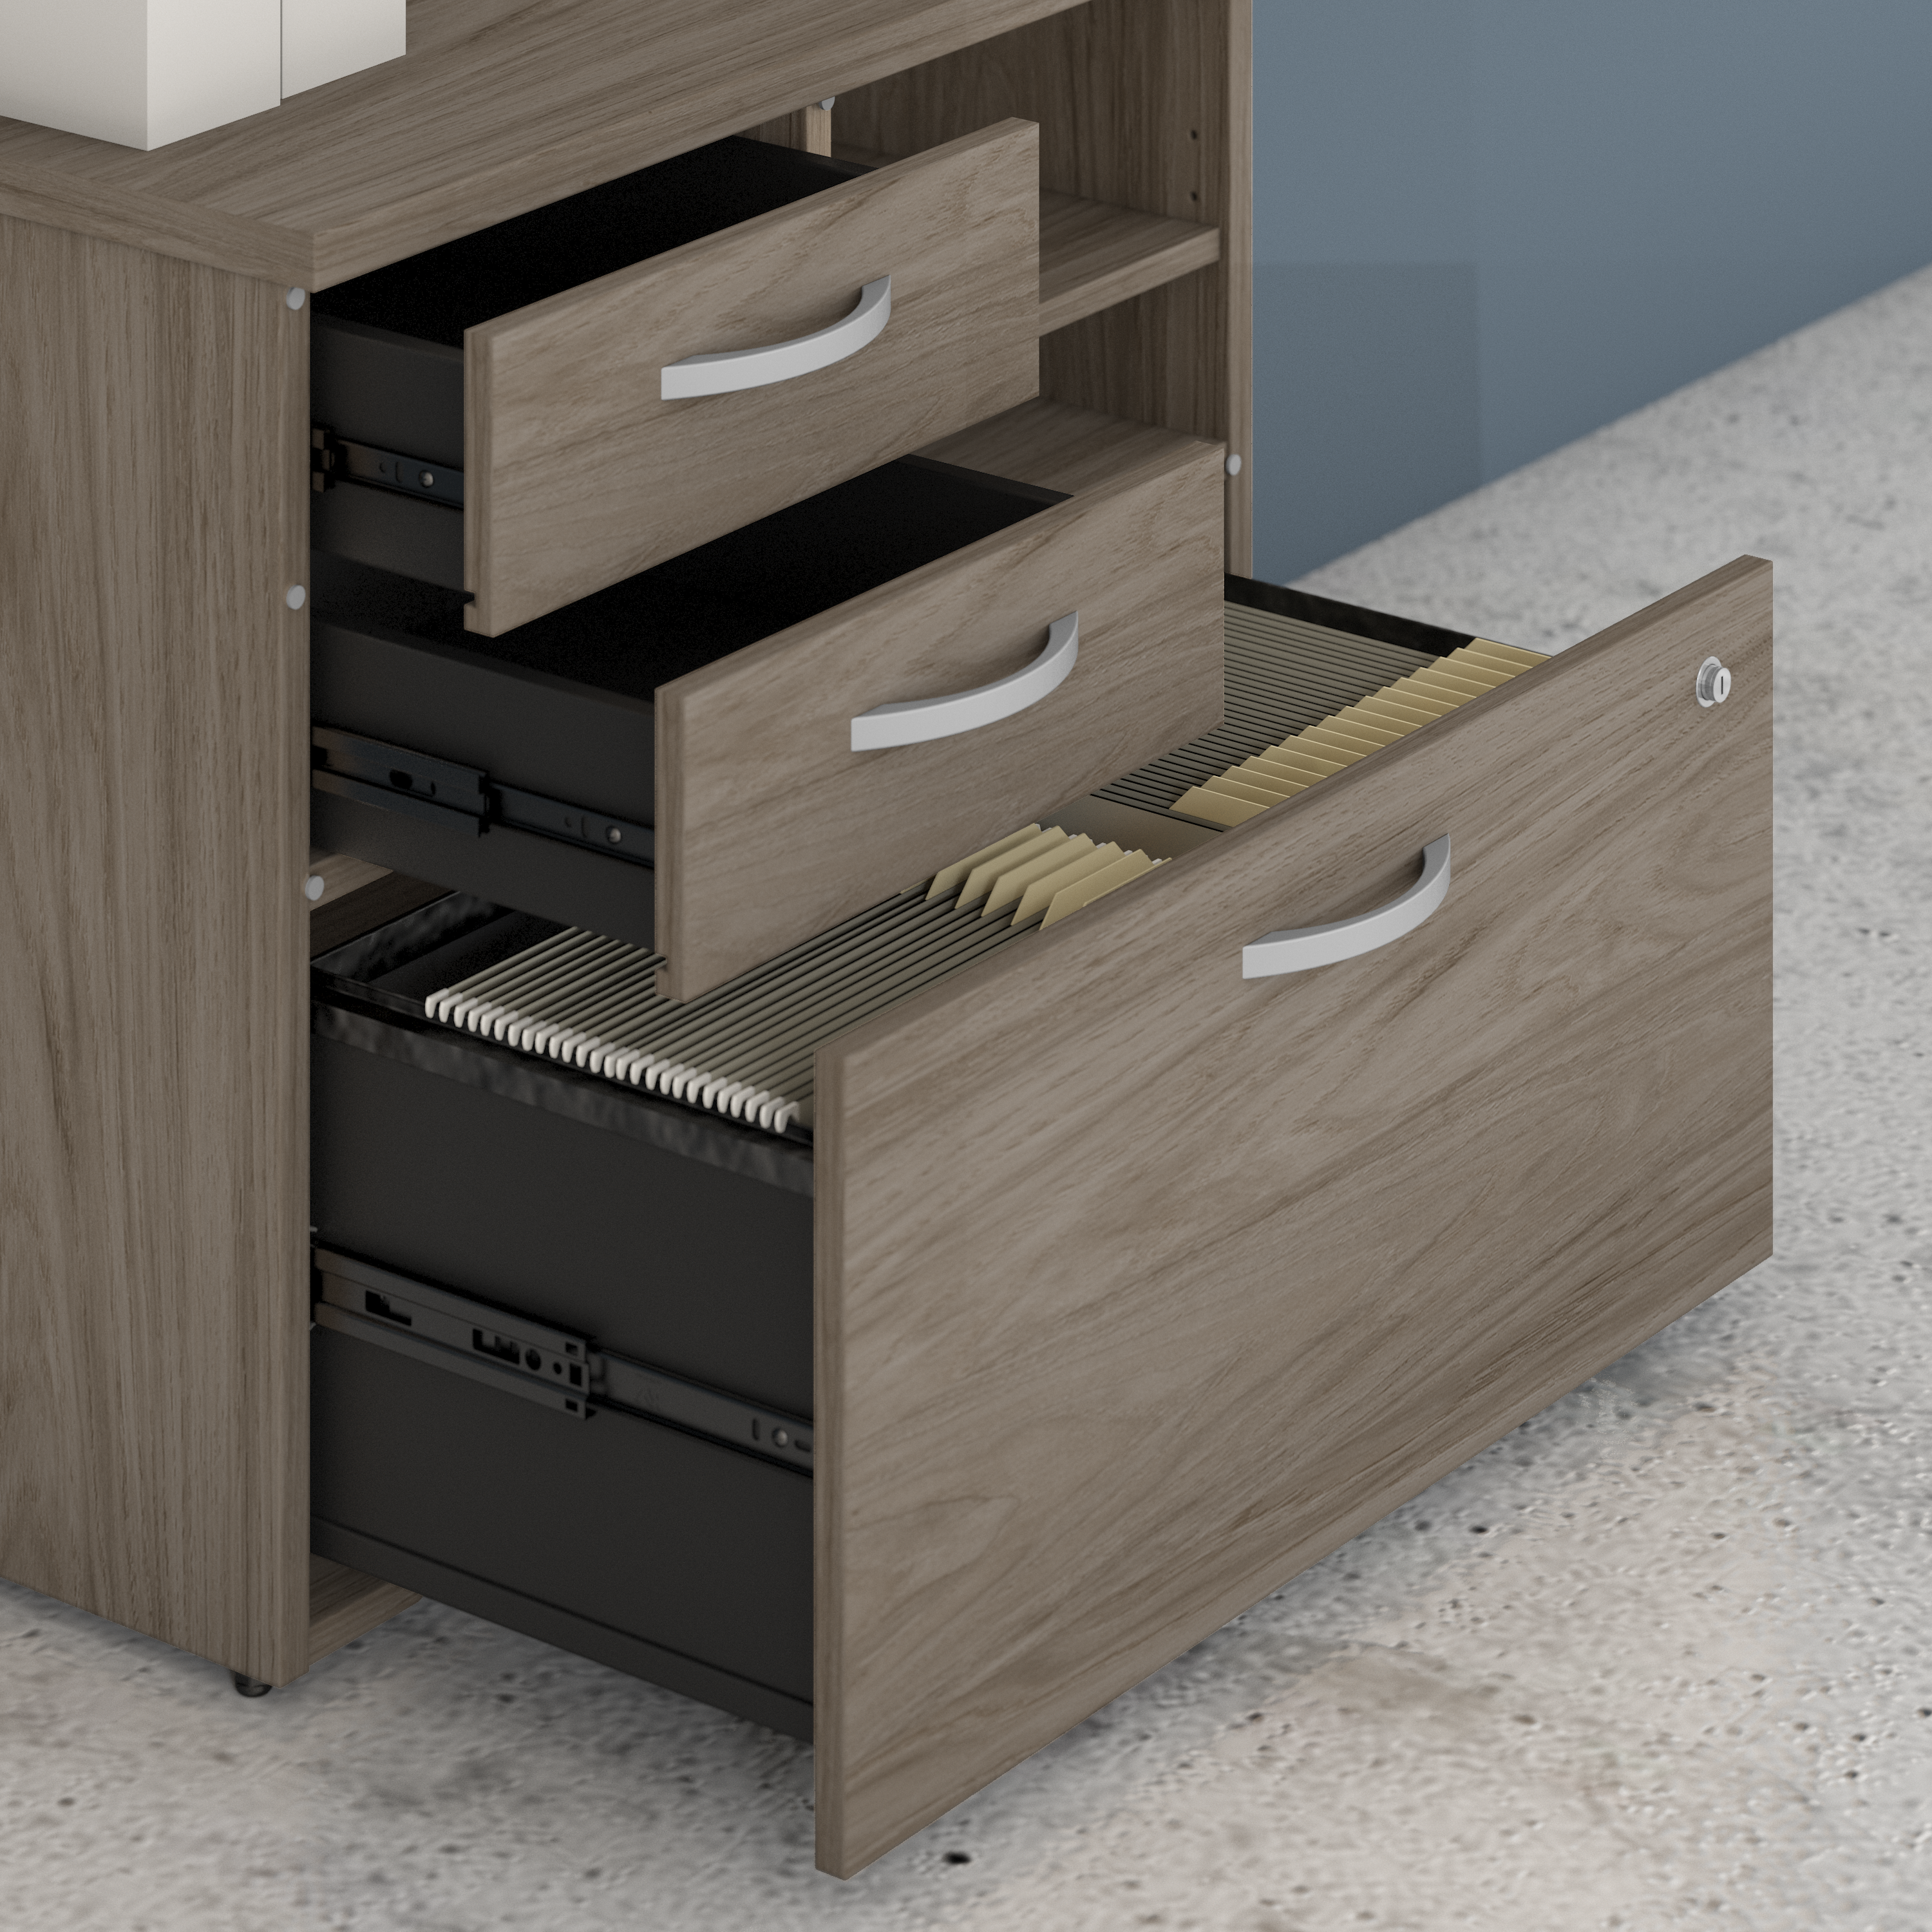 Shop Bush Business Furniture Studio C Office Storage Cabinet with Drawers and Shelves 03 SCF130MHSU #color_modern hickory